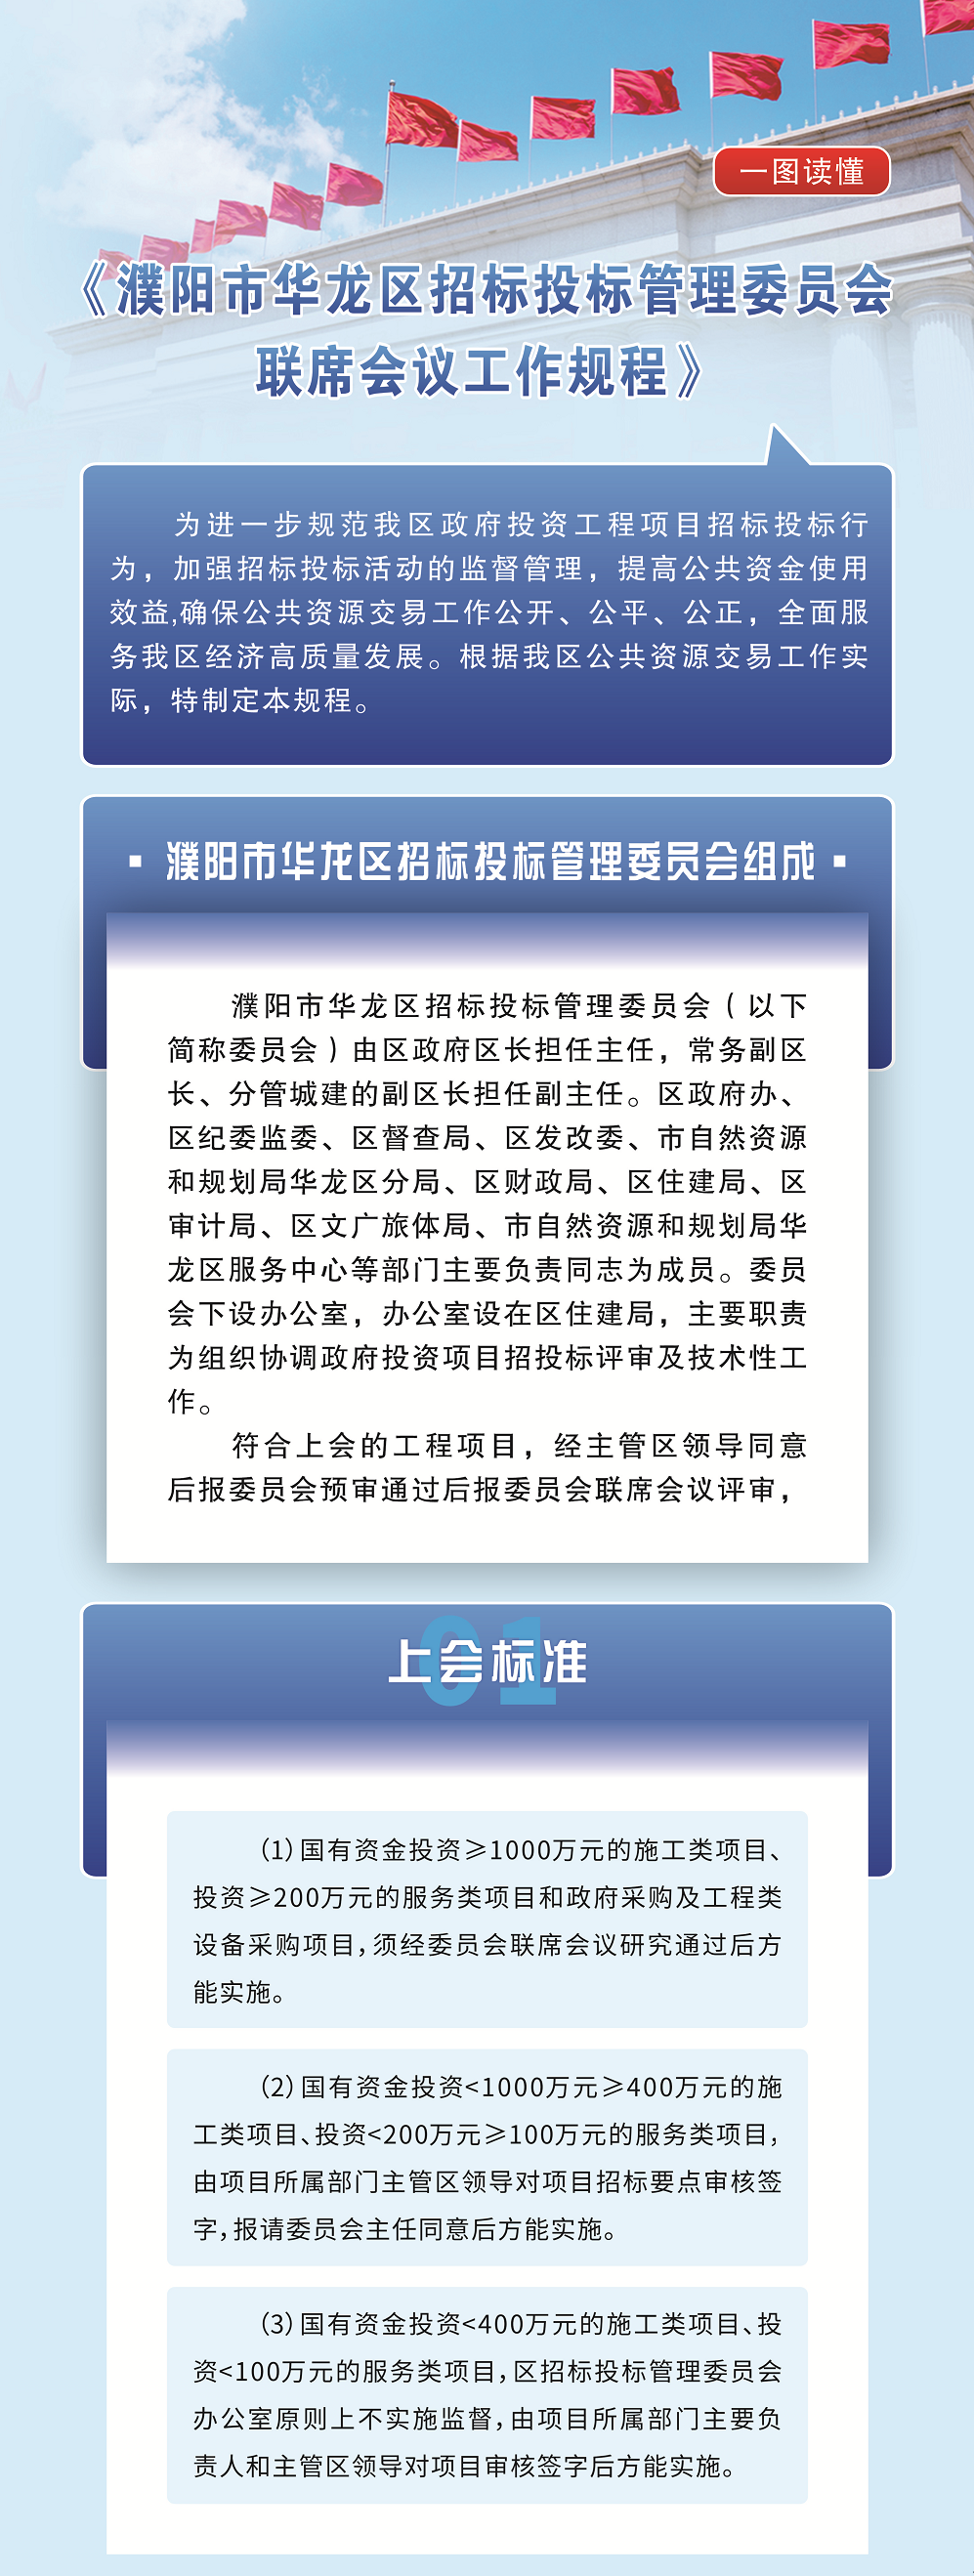 濮阳市华龙区招标投标管理委员会联席会议工作规程